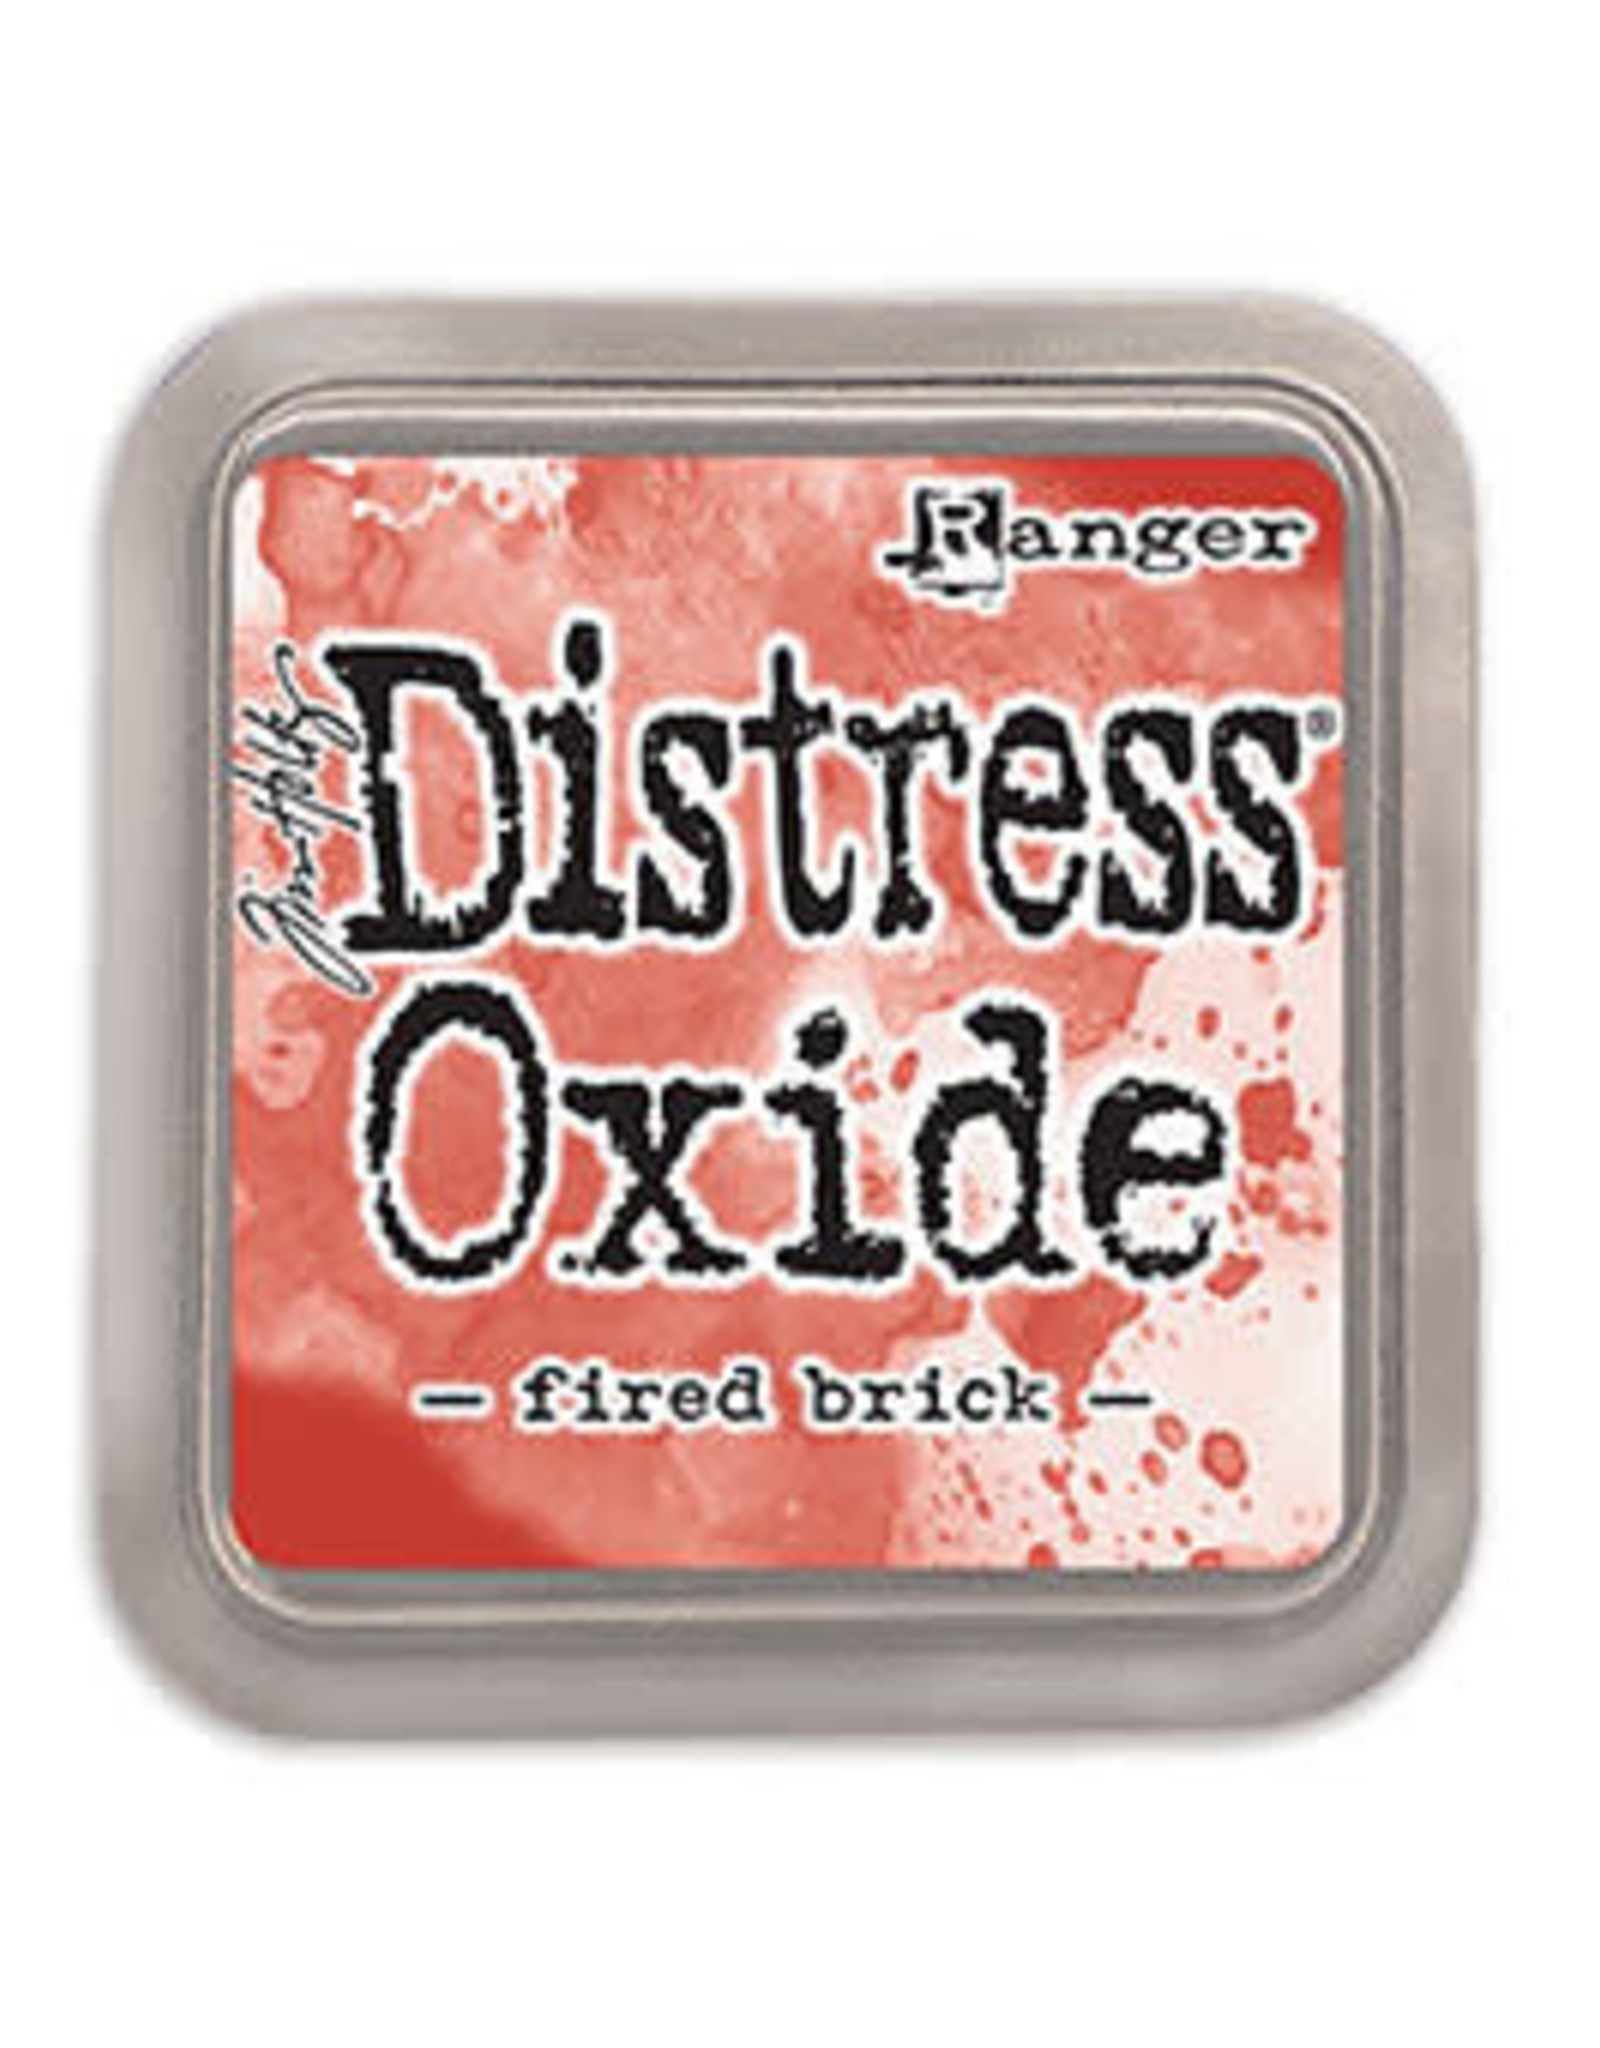 Tim Holtz - Ranger Distress Oxide Fired Brick